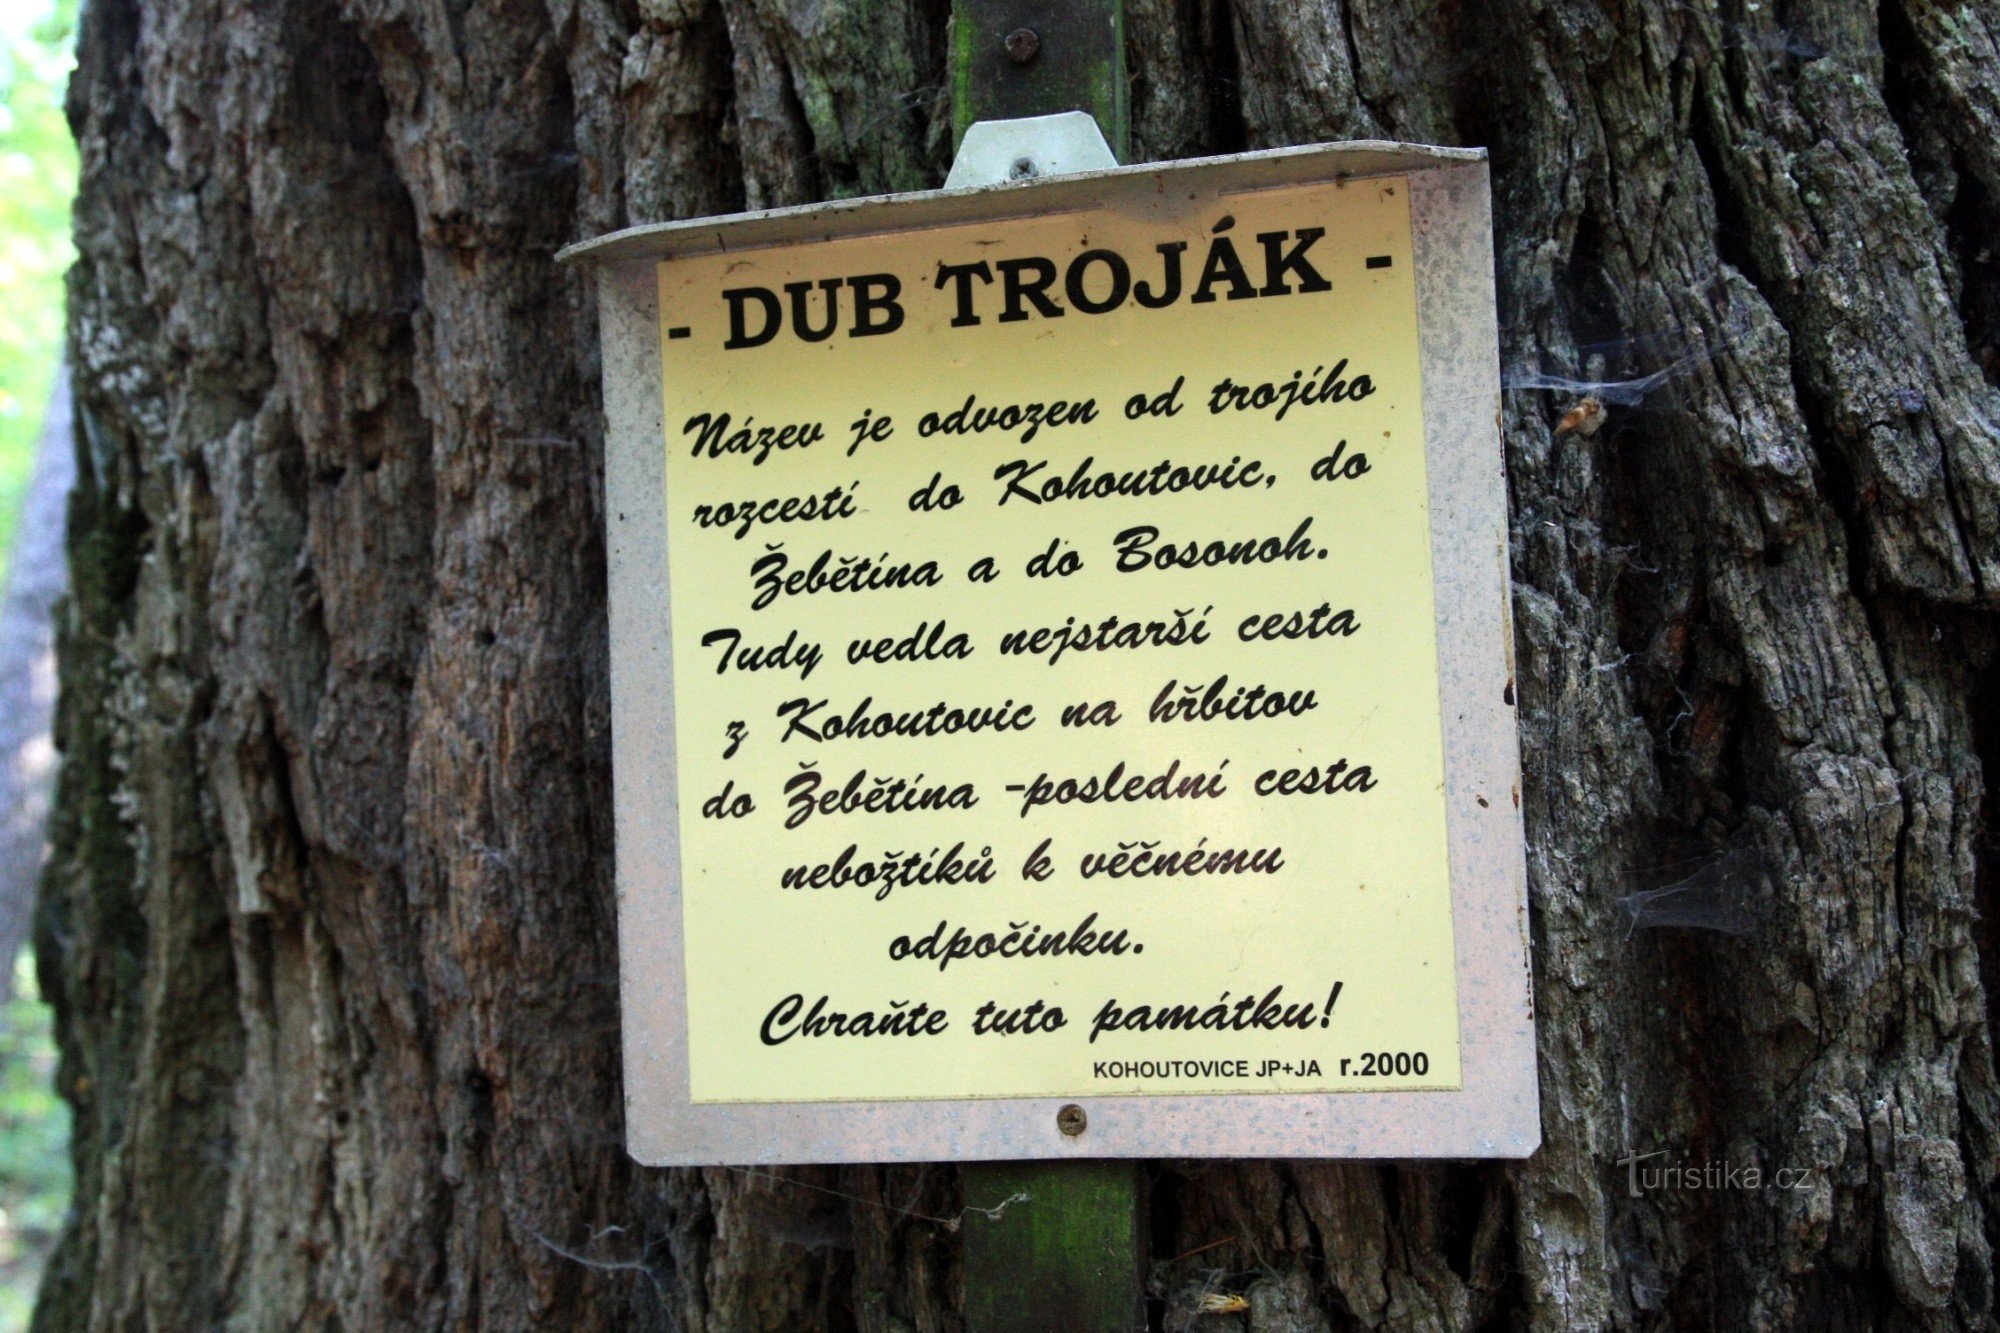 Informationstabel på træet